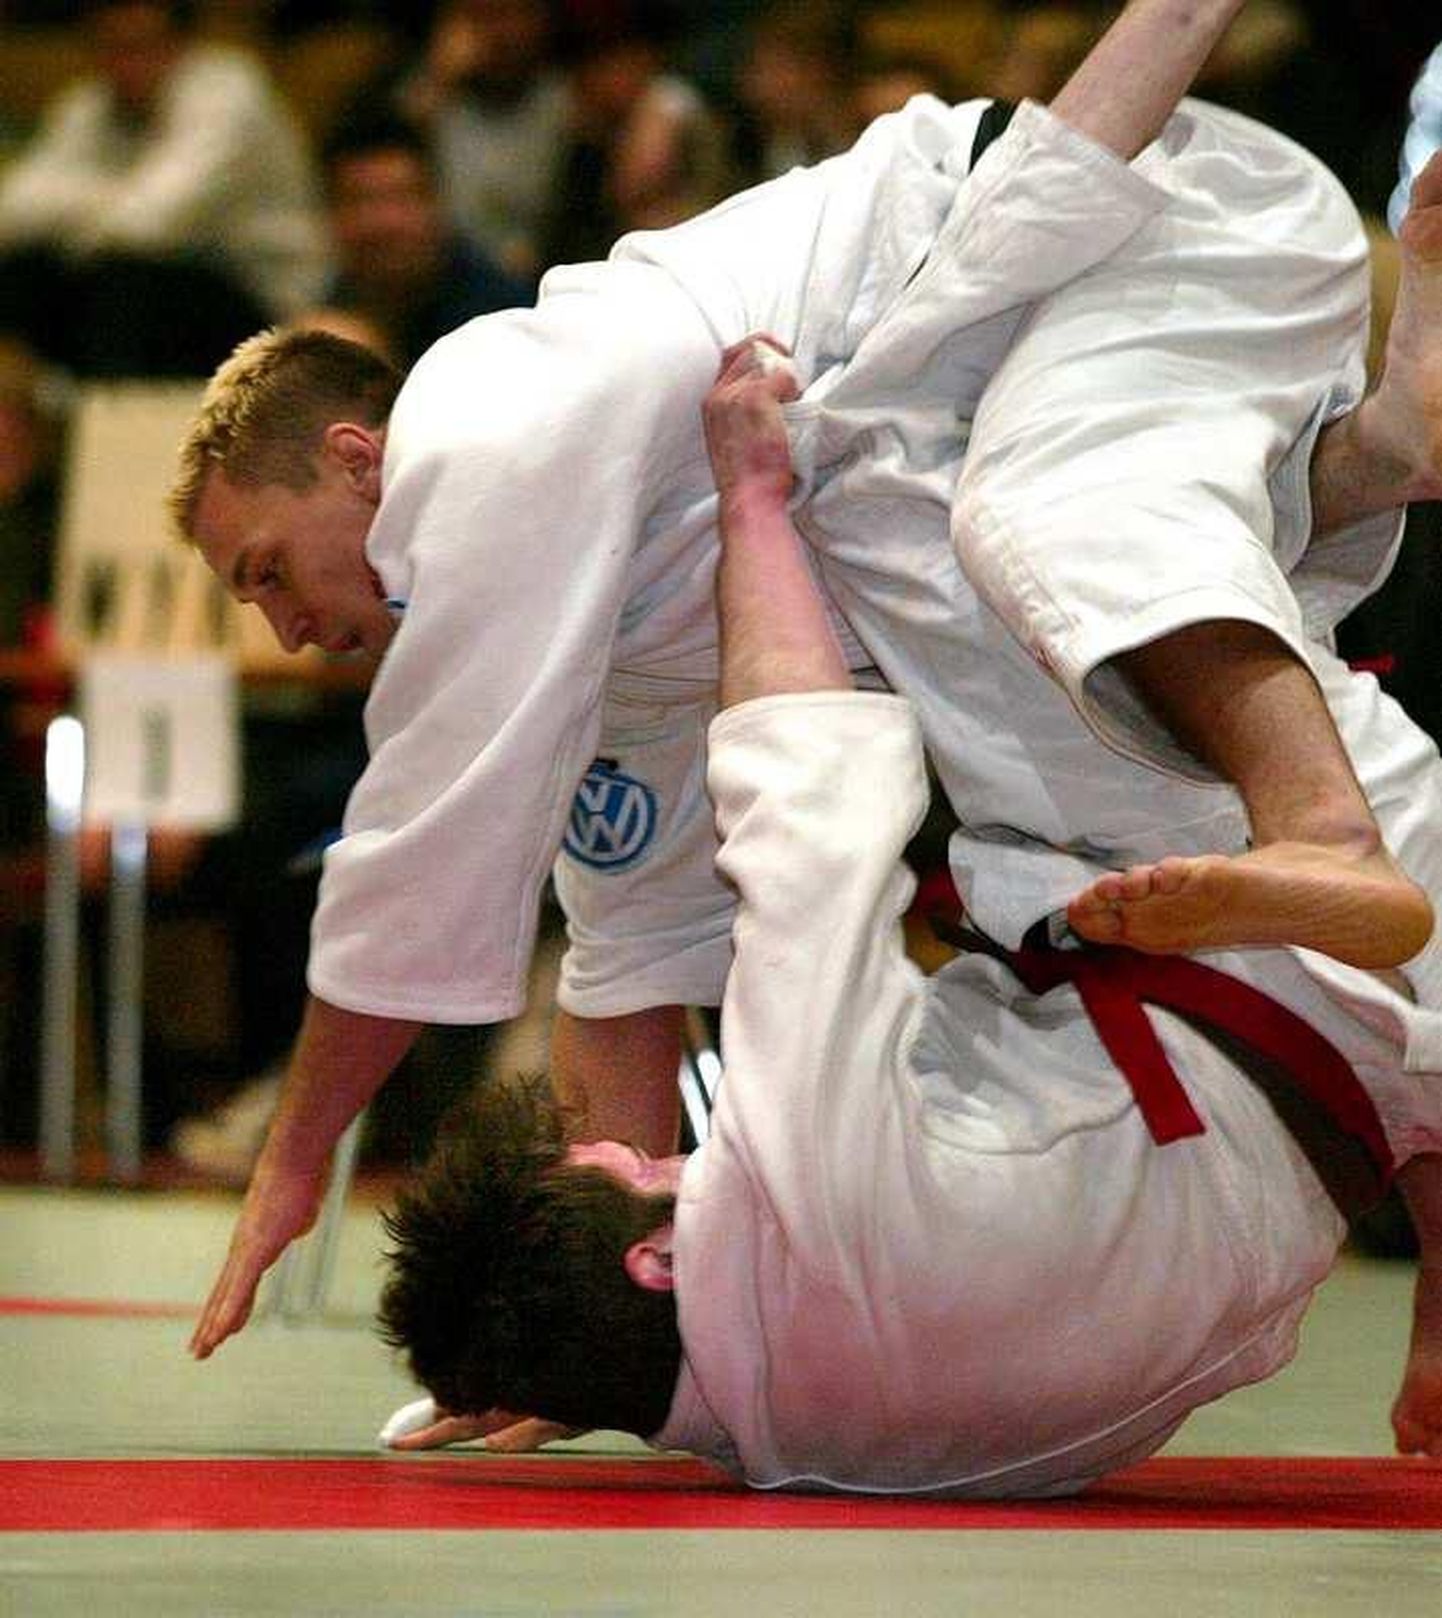 Judo.